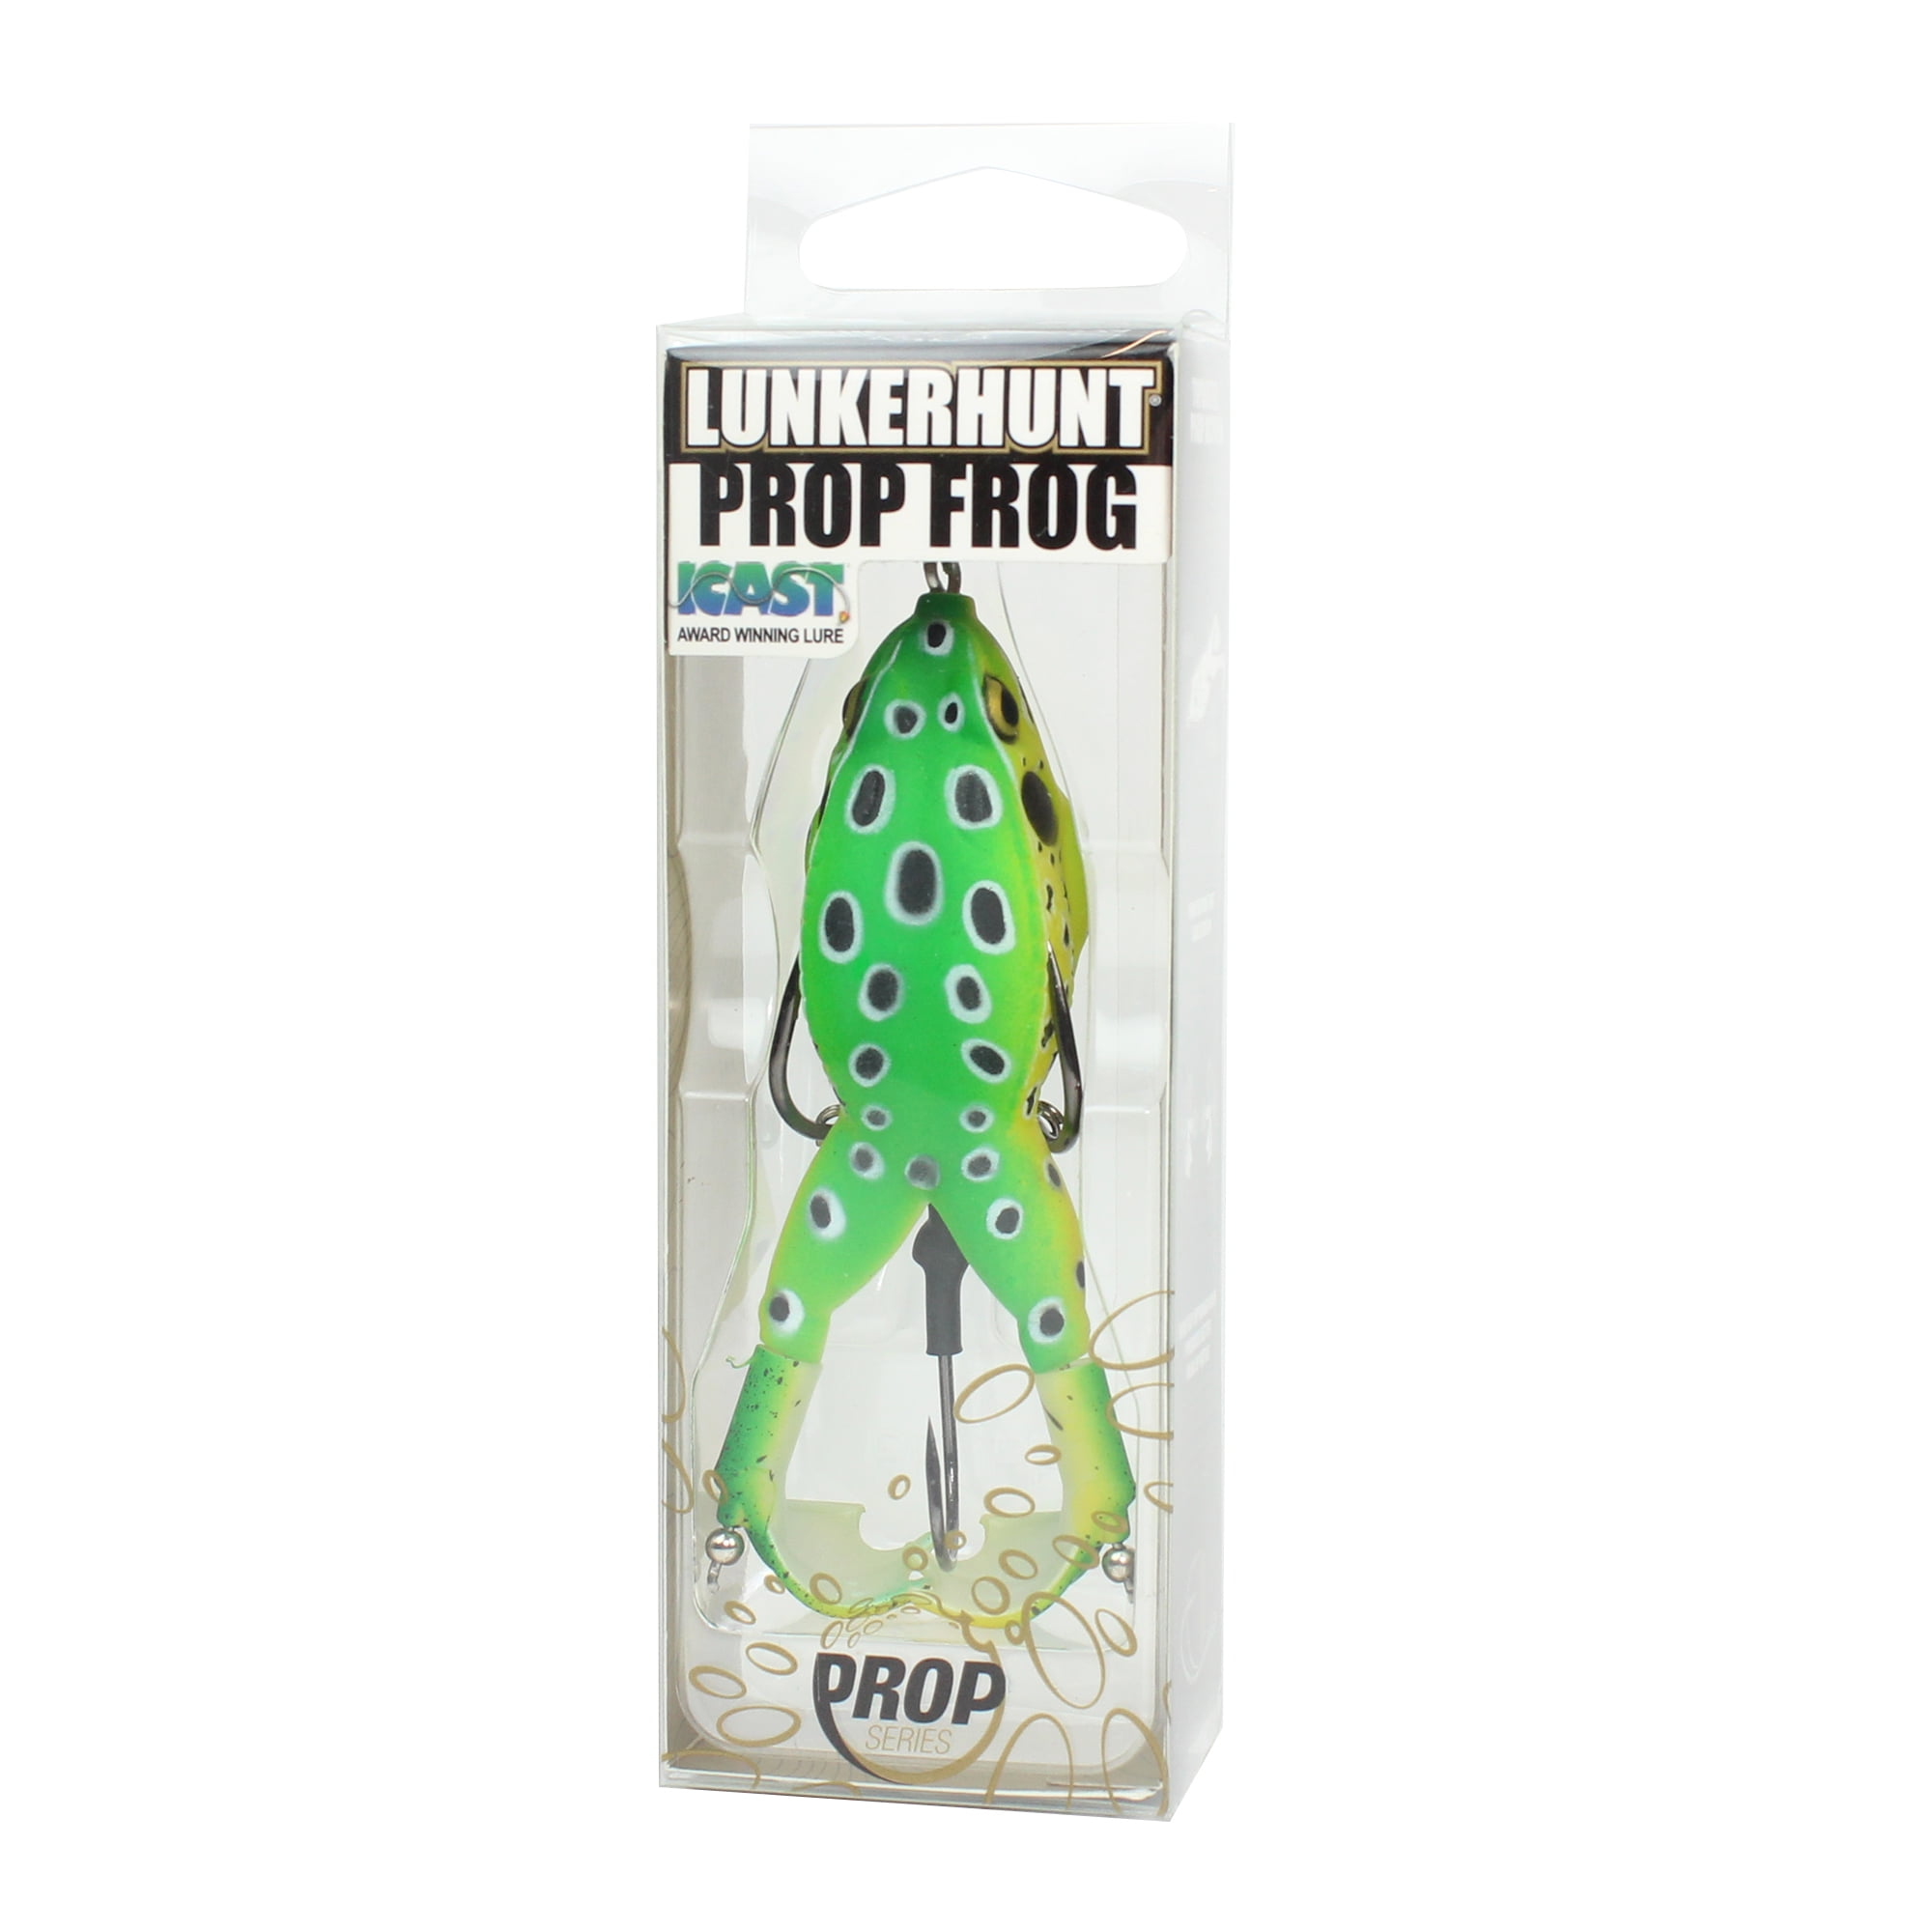 Lunkerhunt Prop Frog - Topwater Lure - Green Tea,3.5in,1/2oz,Soft